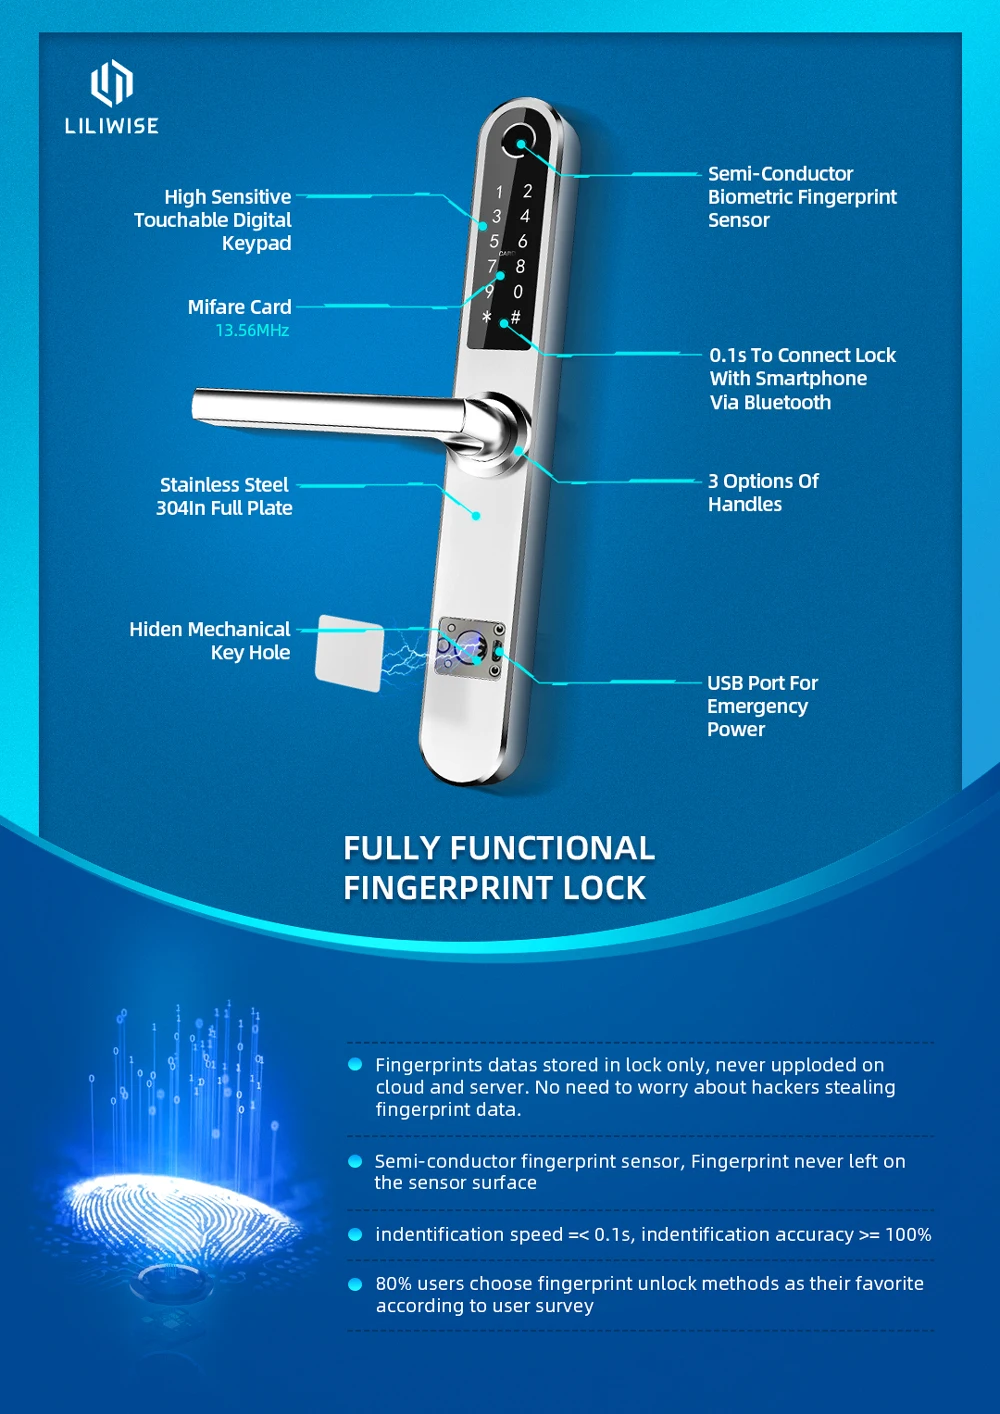 Safety APP BLE WiFi Control Smart Fingerprint Aluminum Door Lock